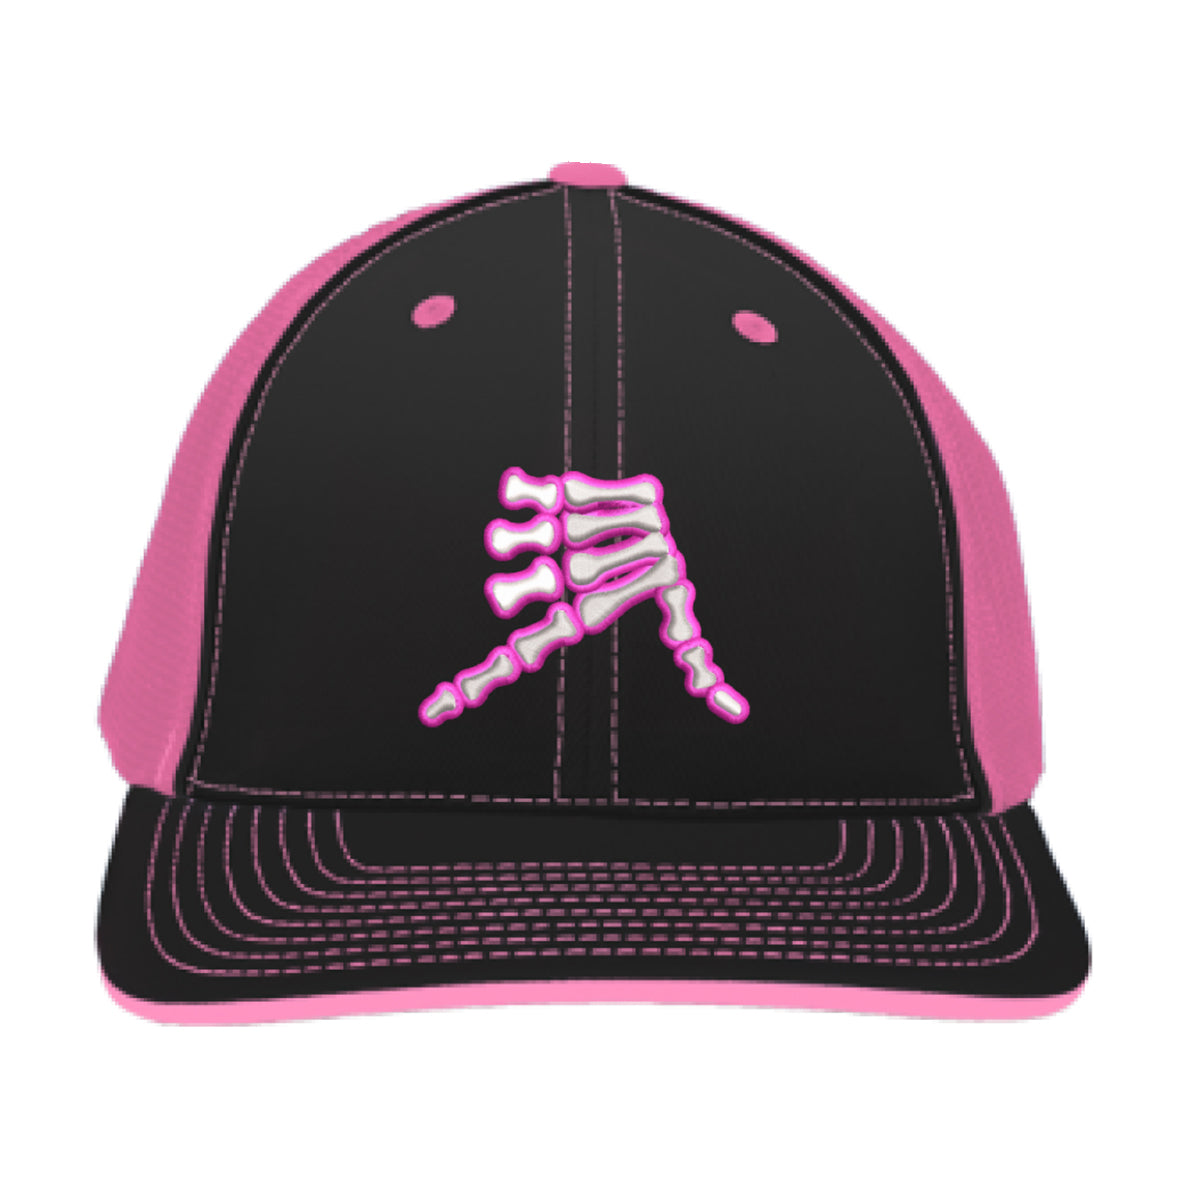 AkS Bones Trucker Hat in Black & Neon Pink – AkSportswear